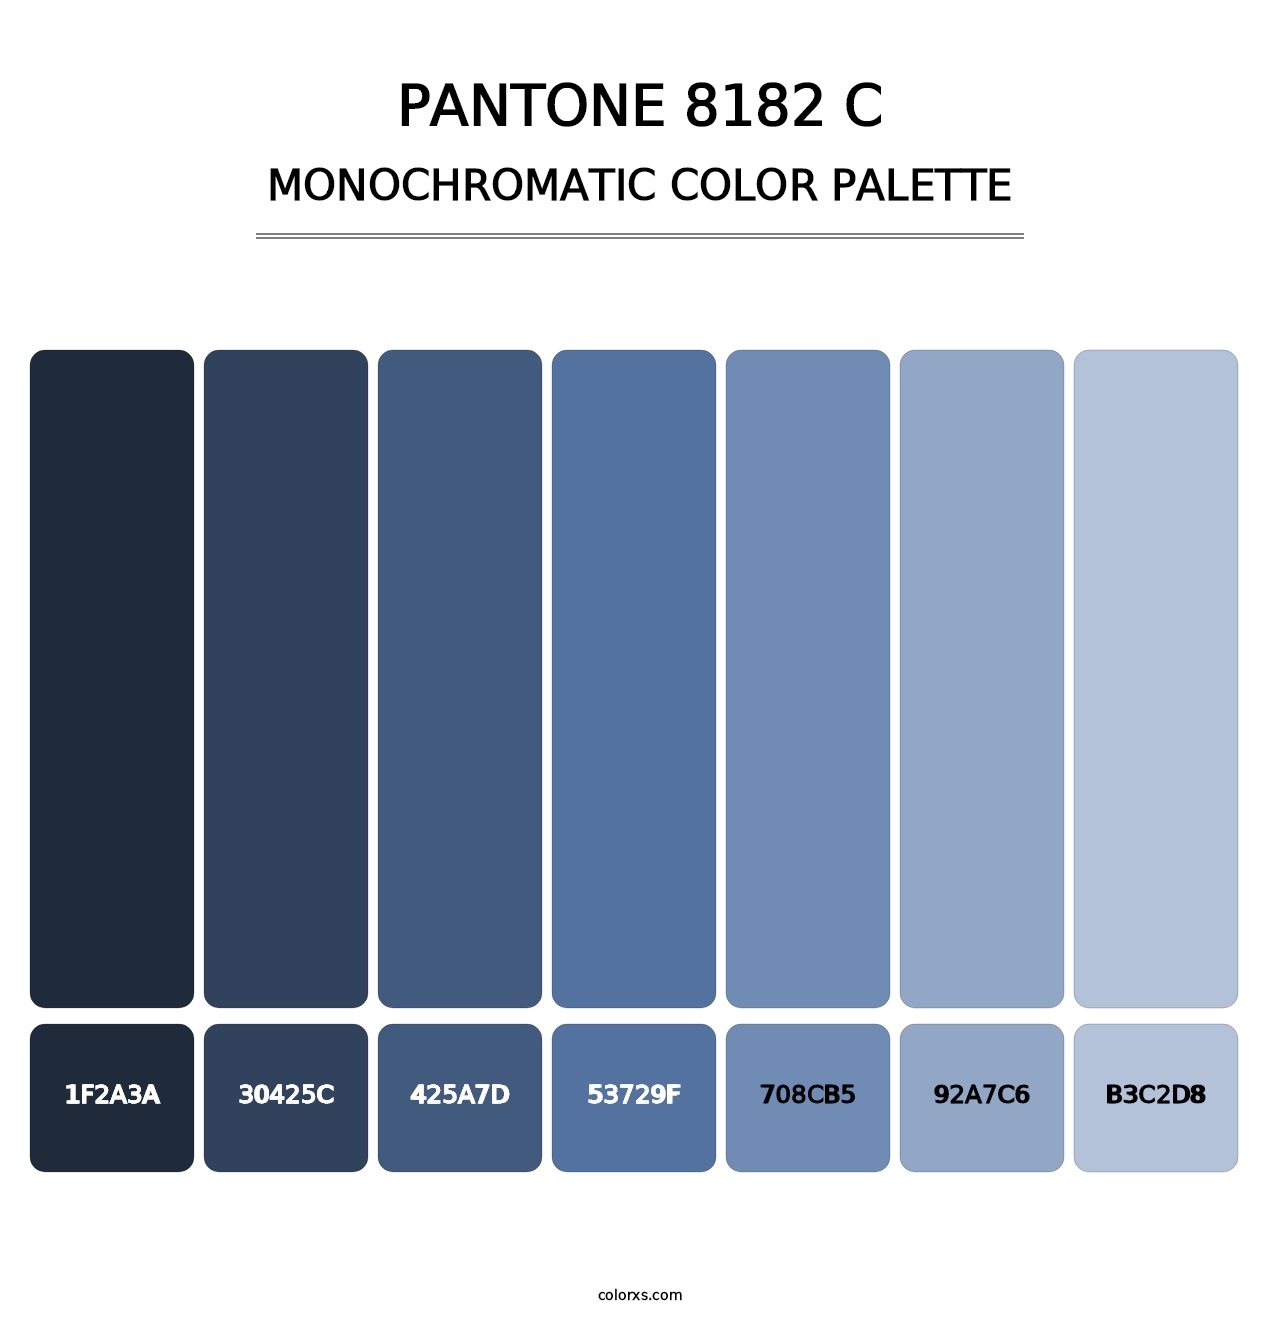 PANTONE 8182 C - Monochromatic Color Palette